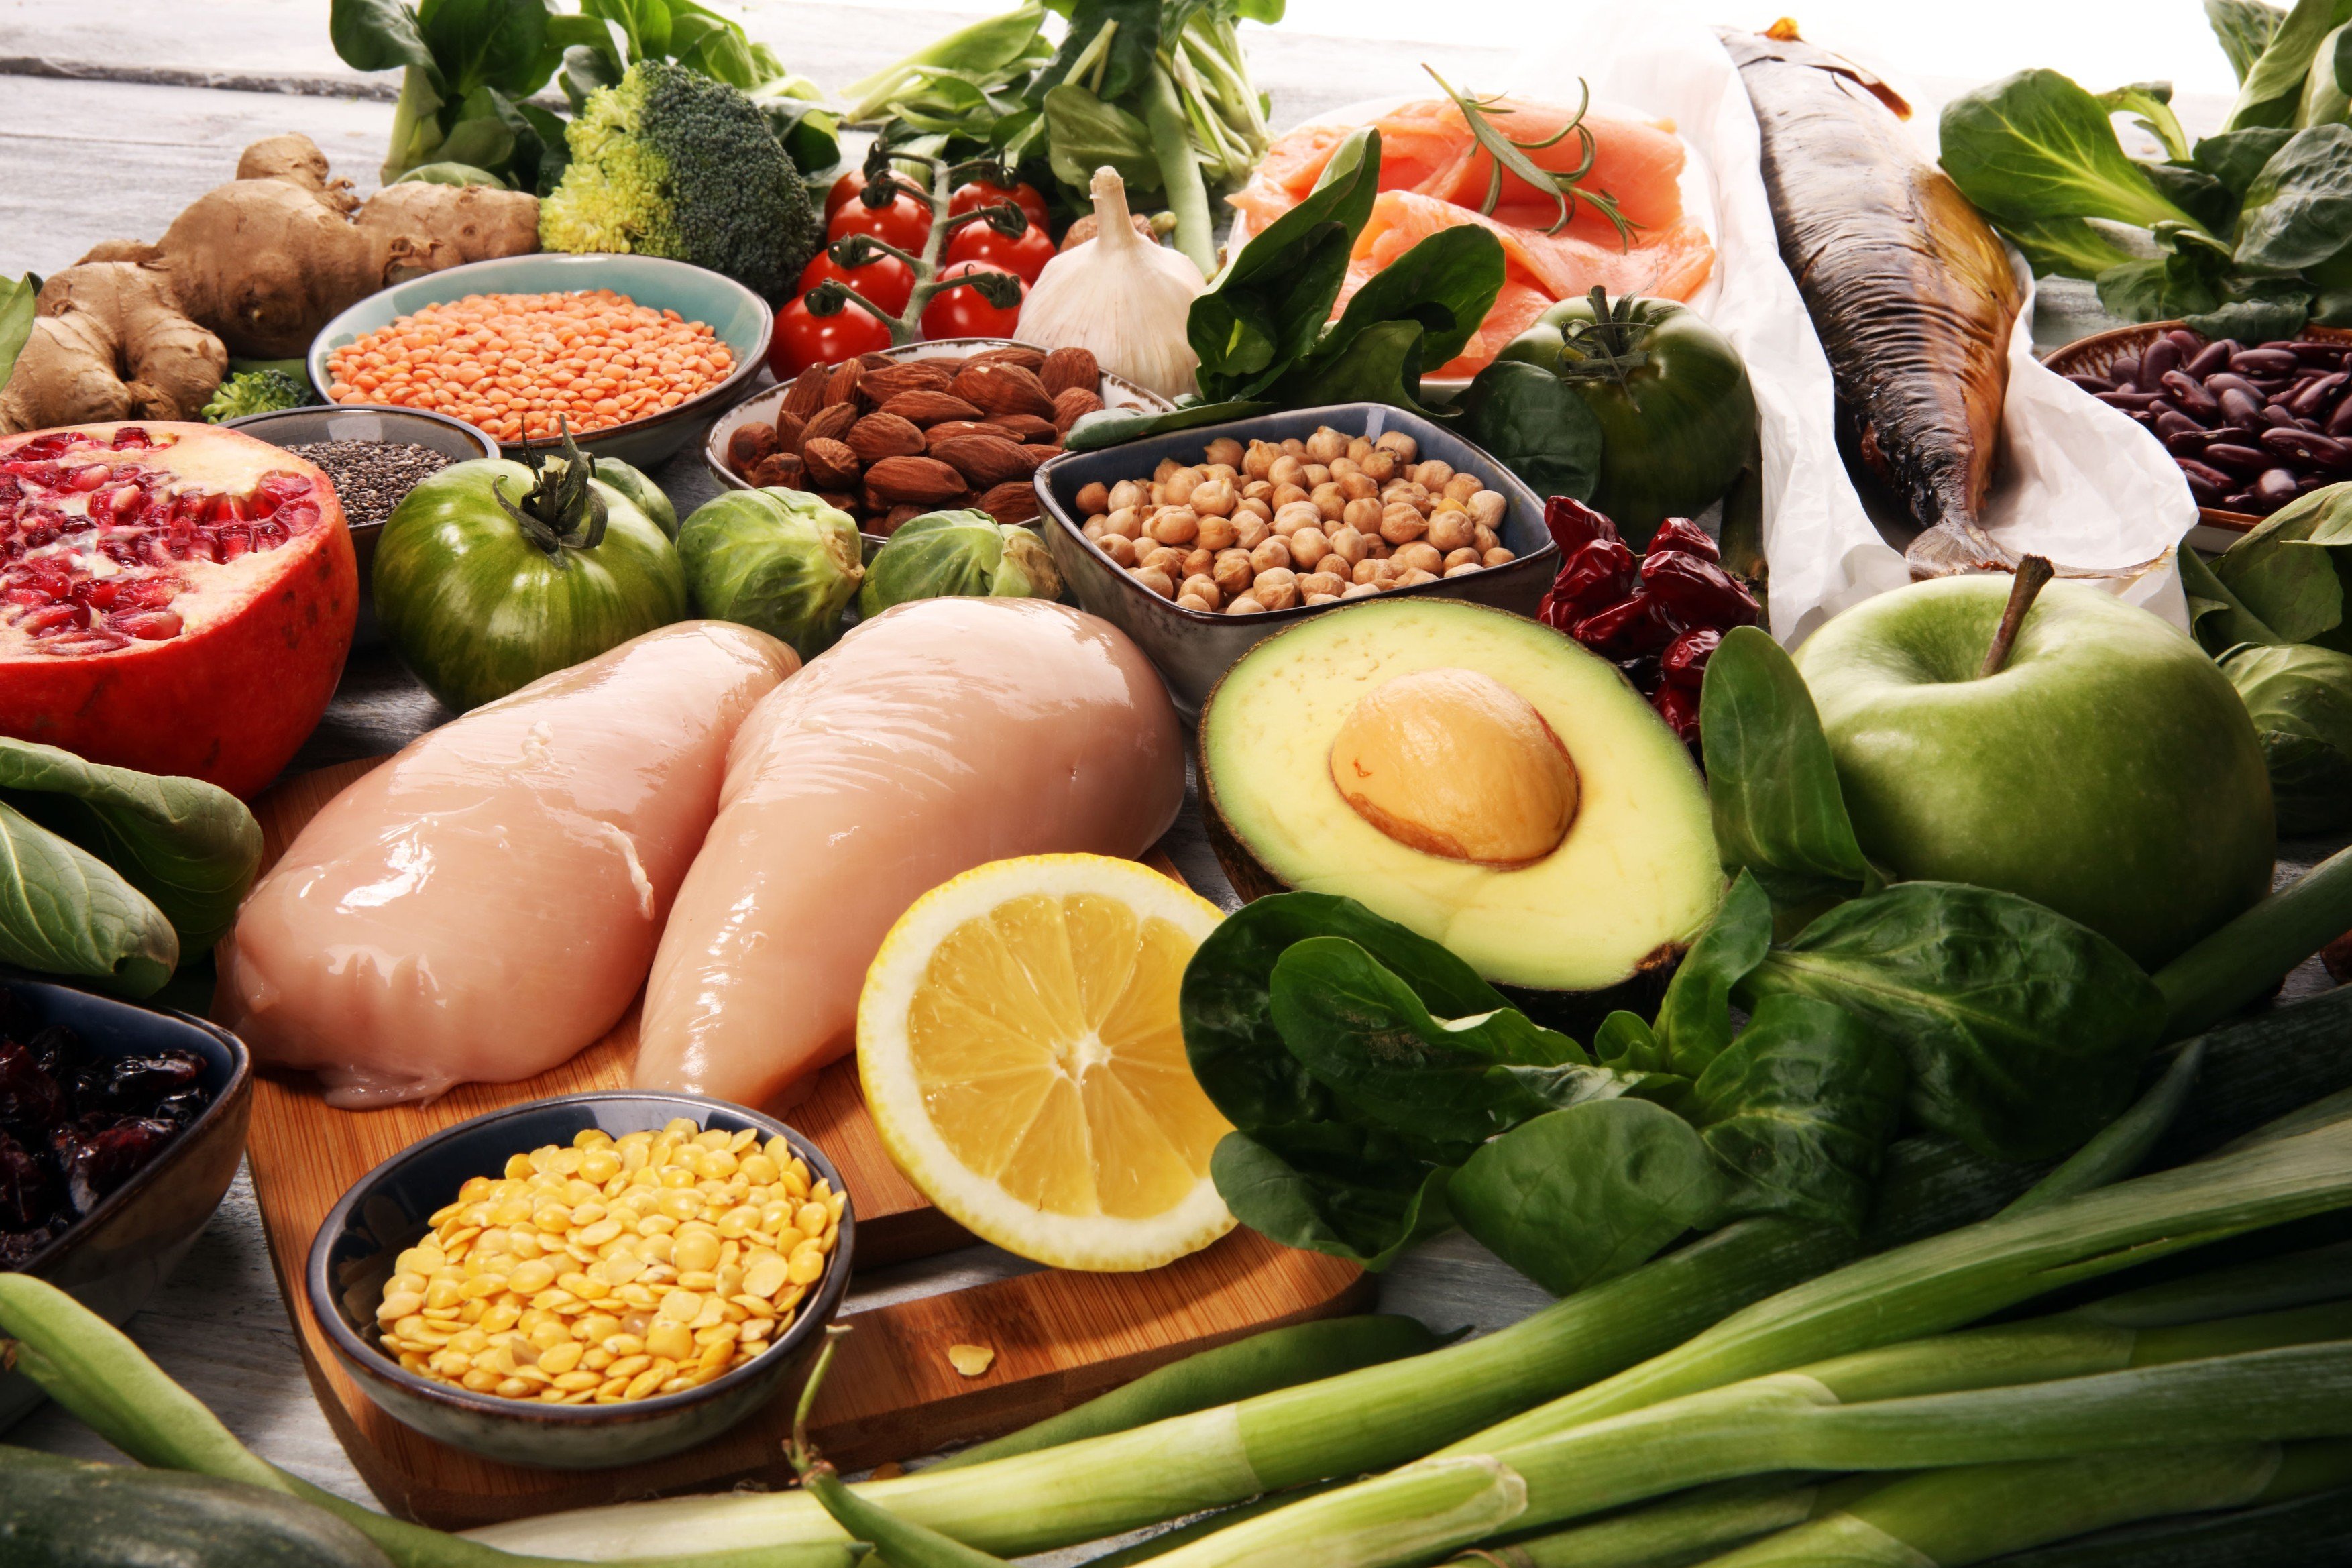 Zdravá strava, dieta, zelenina, ovoce, kuřecí maso, ryby, hubnutí. Ilustrační foto